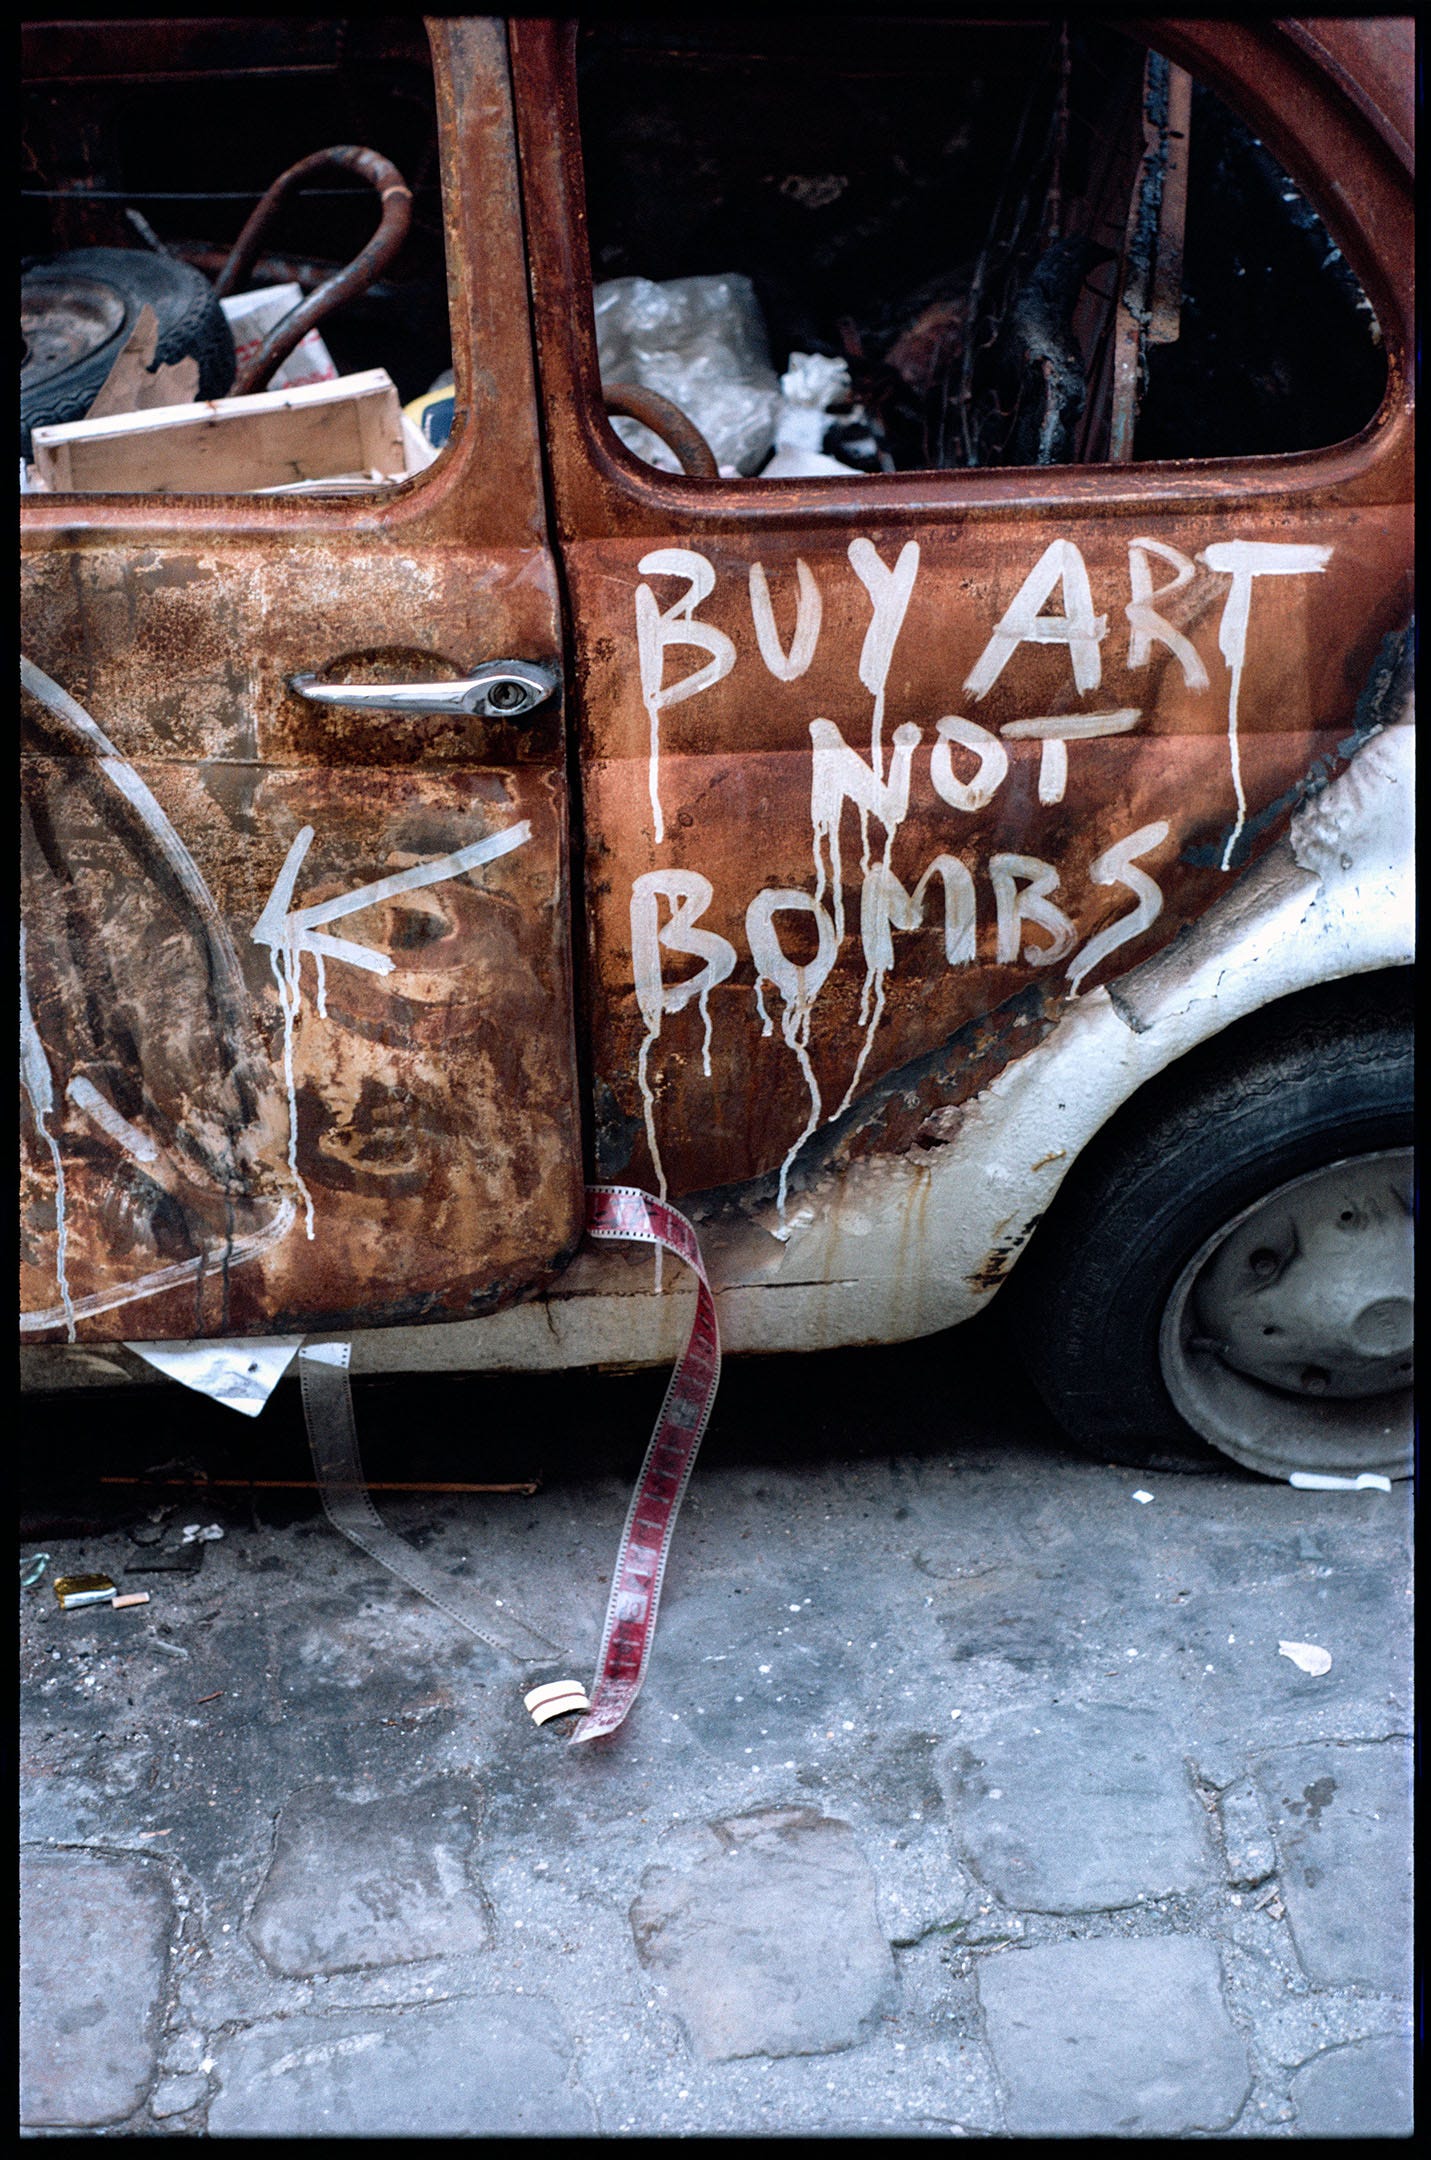 art not bombs, 1985